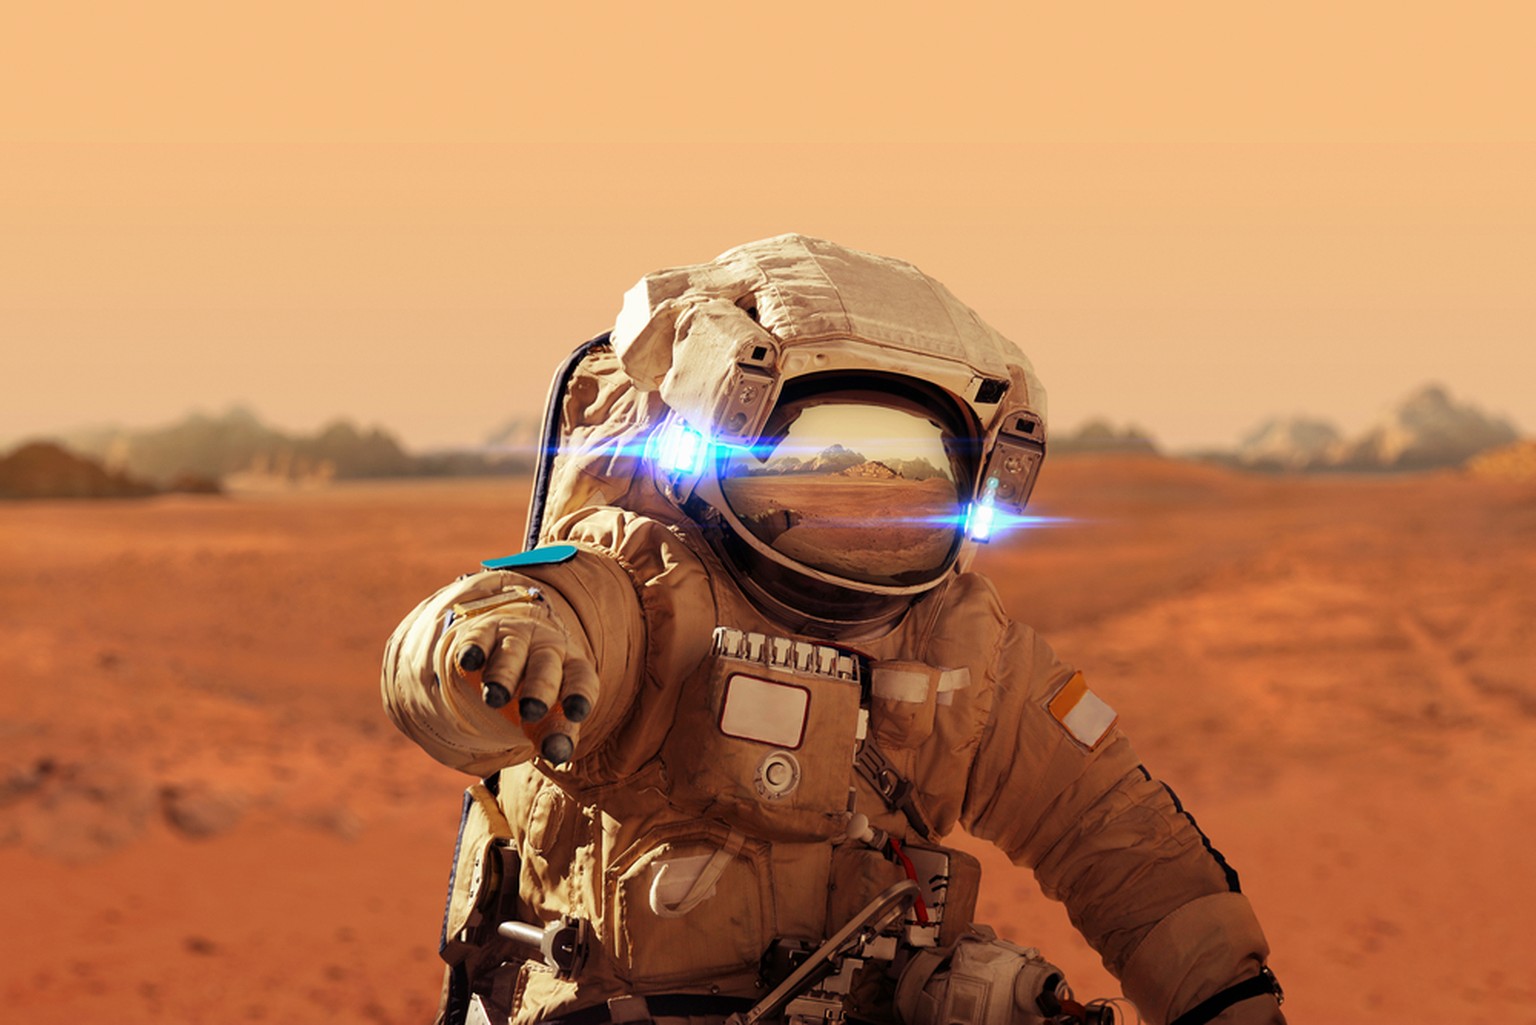 Darstellung eines Astronauten auf dem Mars